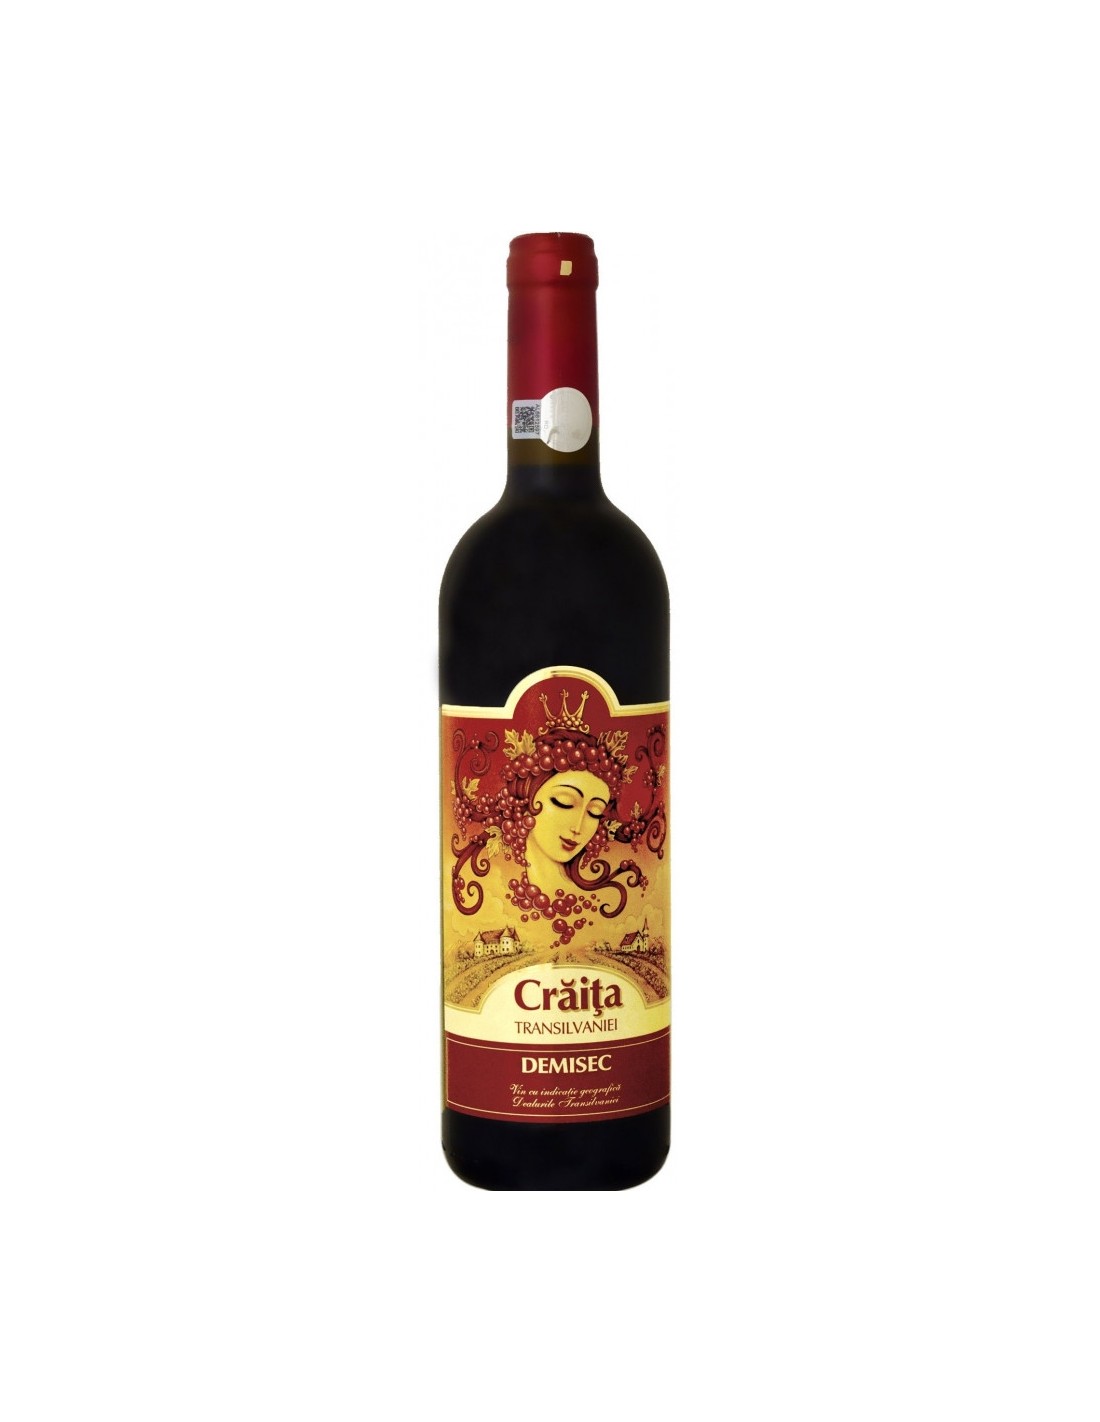 Vin rosu demisec, Craita Transilvaniei Jidvei, 0.75L, 13% alc., Romania alcooldiscount.ro